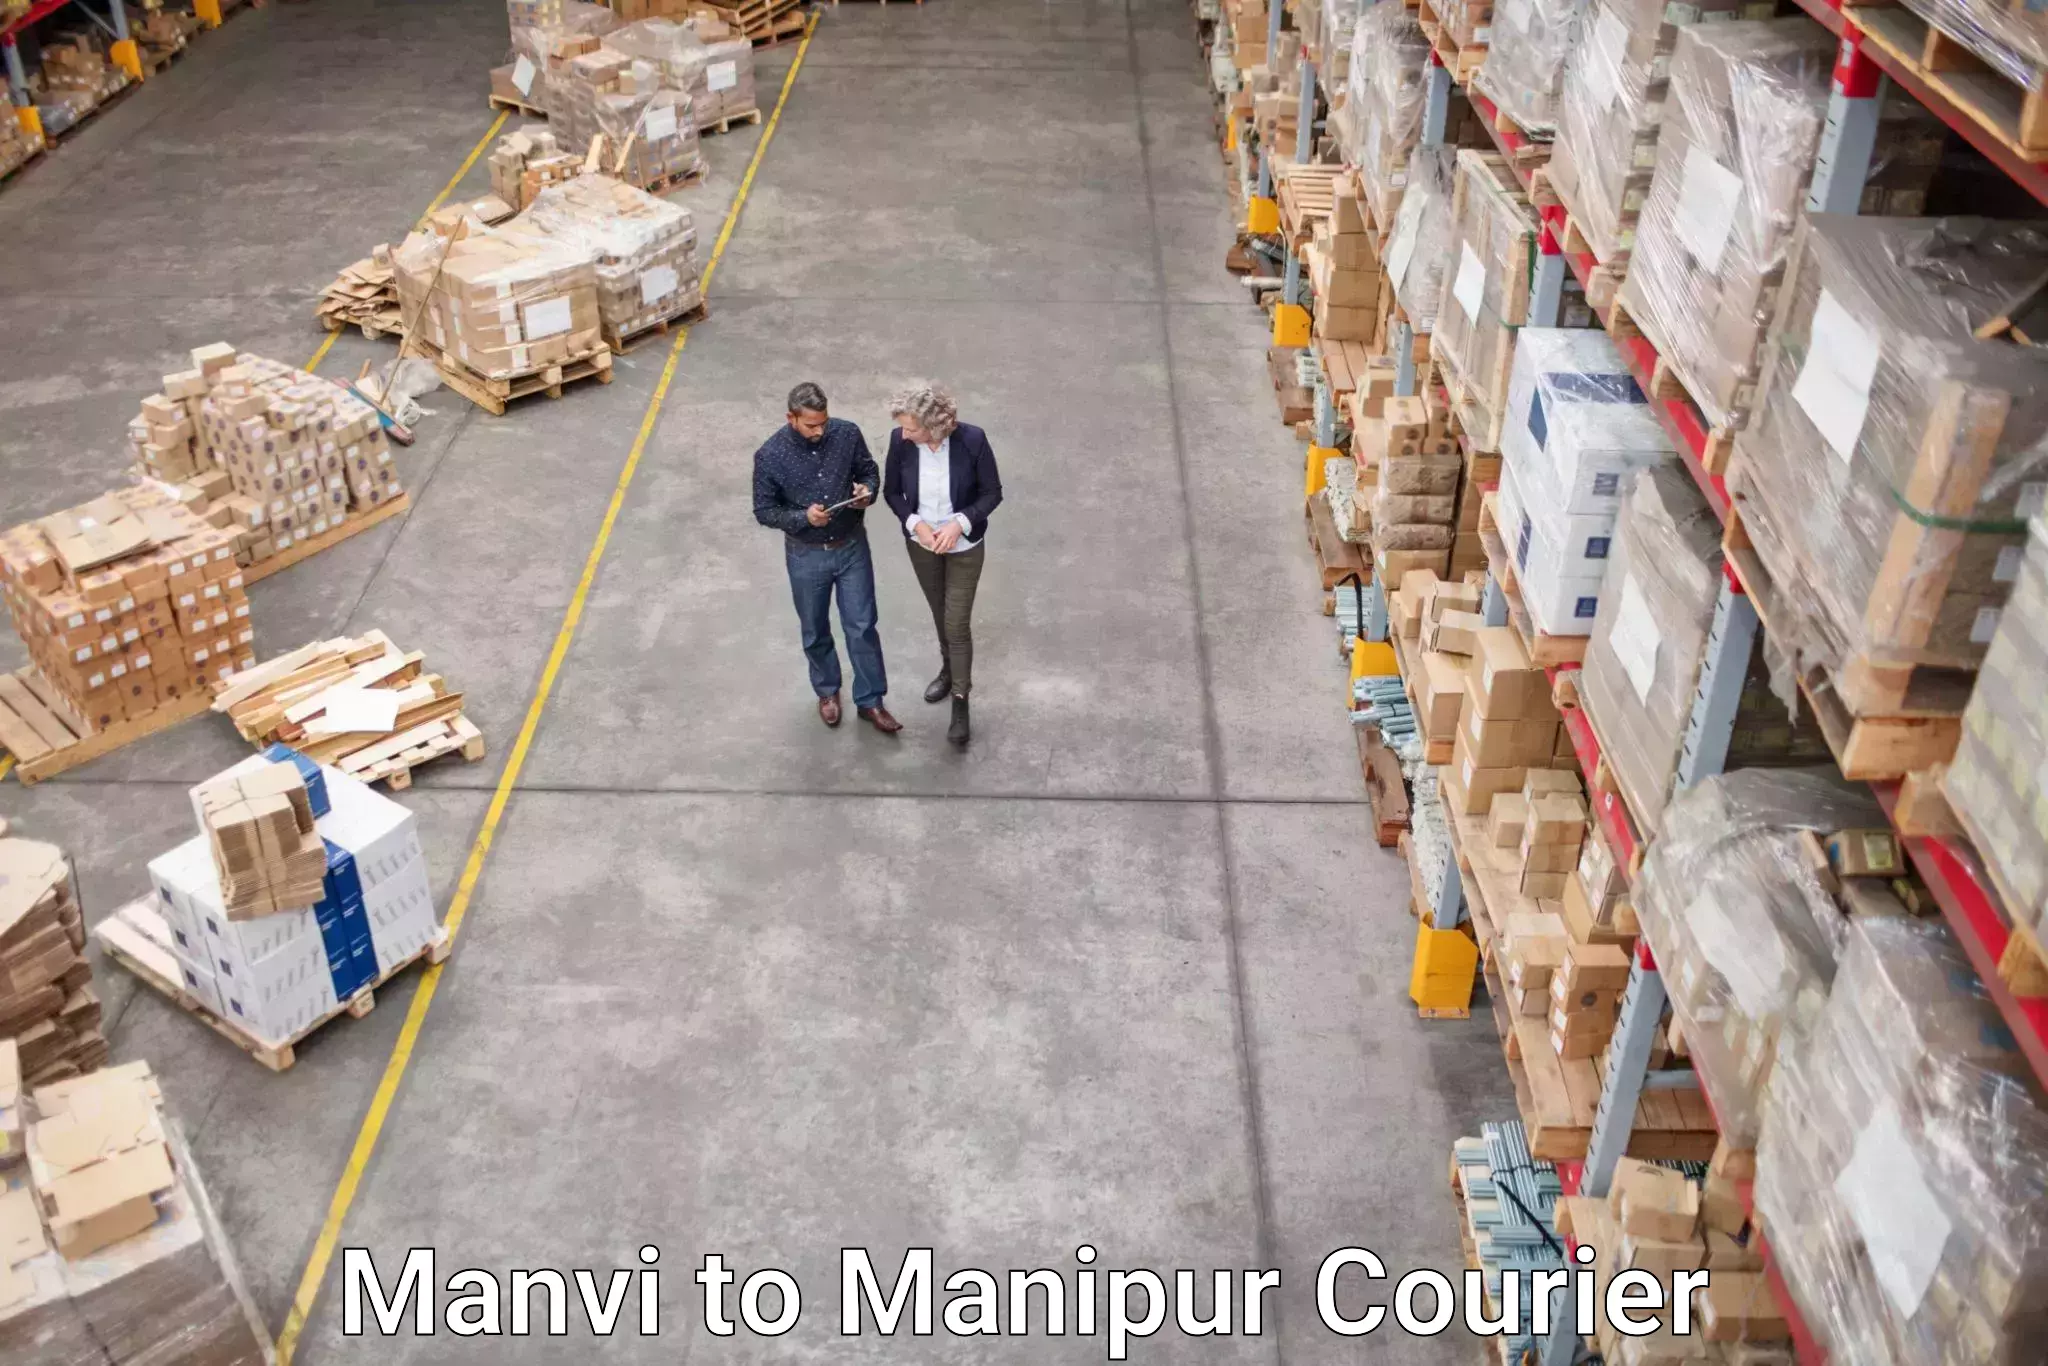 Courier service comparison Manvi to Moirang